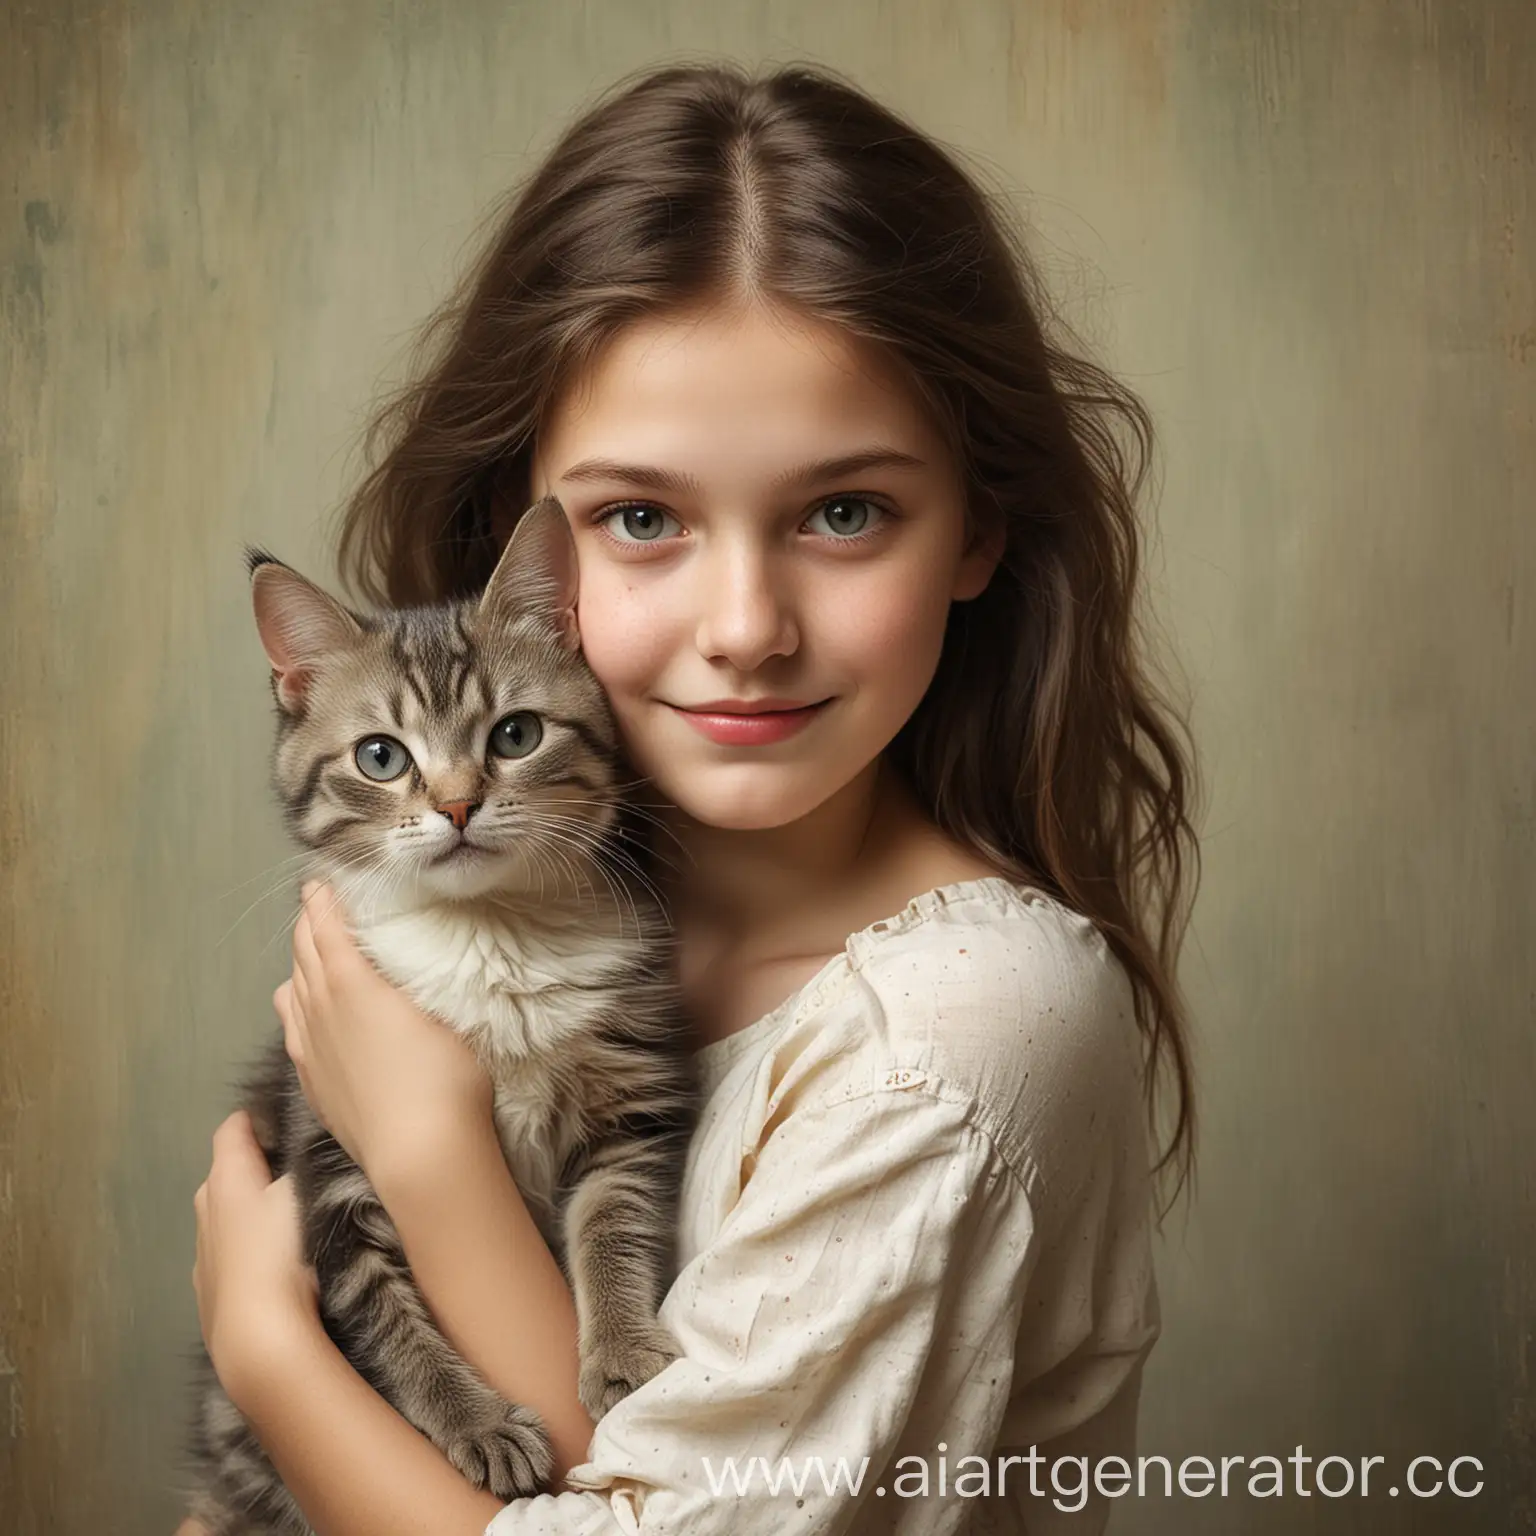 Girl-Holding-Cat-in-Tender-Embrace